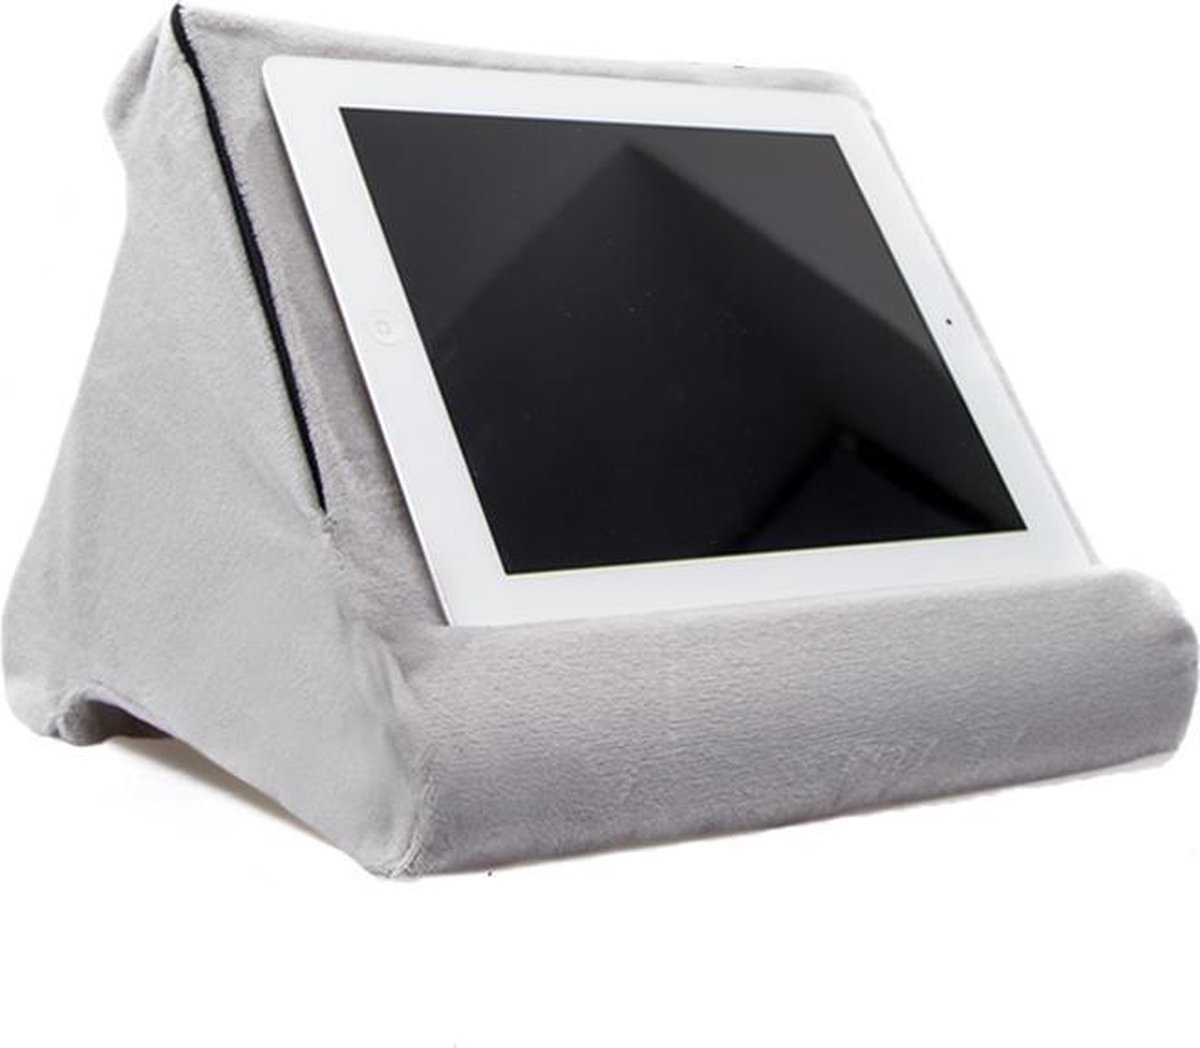 Framehack Tabletkussen - Universeel Tablet Houder - Tablet Standaard Voor Thuis In Bed - Extra Comfort Tablethouder - Wasbare Tablet Hoes - Schootkussen - Pillow Pad - In 3 Kleuren Beschikbaar